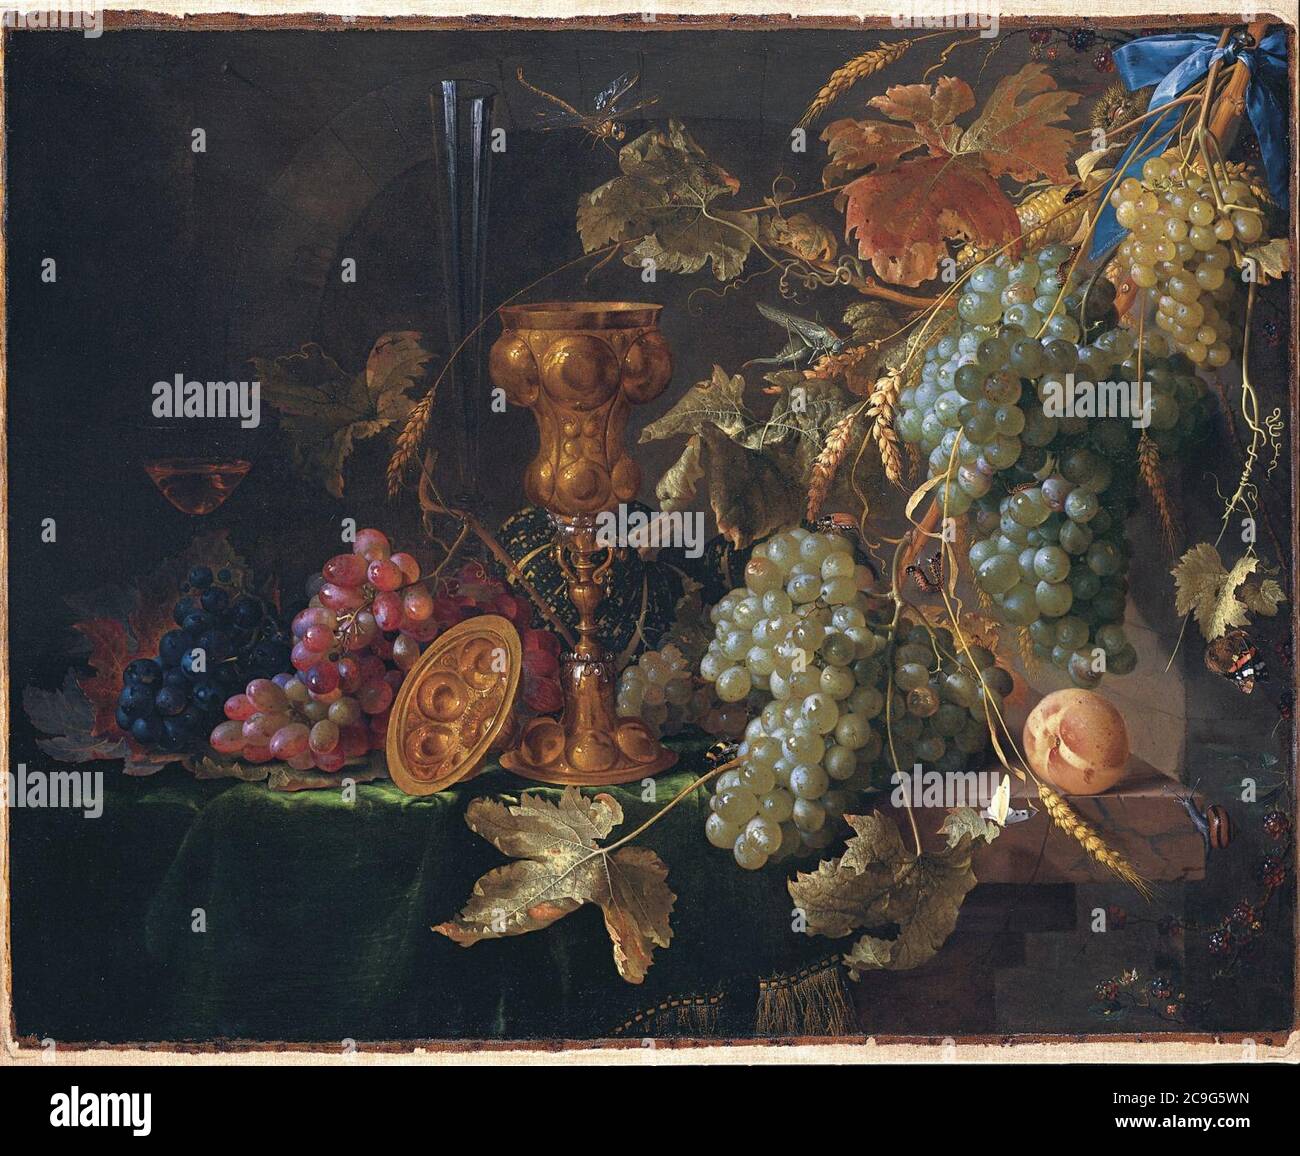 Jan Davidsz de Heem - encore la vie avec les raisins. Banque D'Images